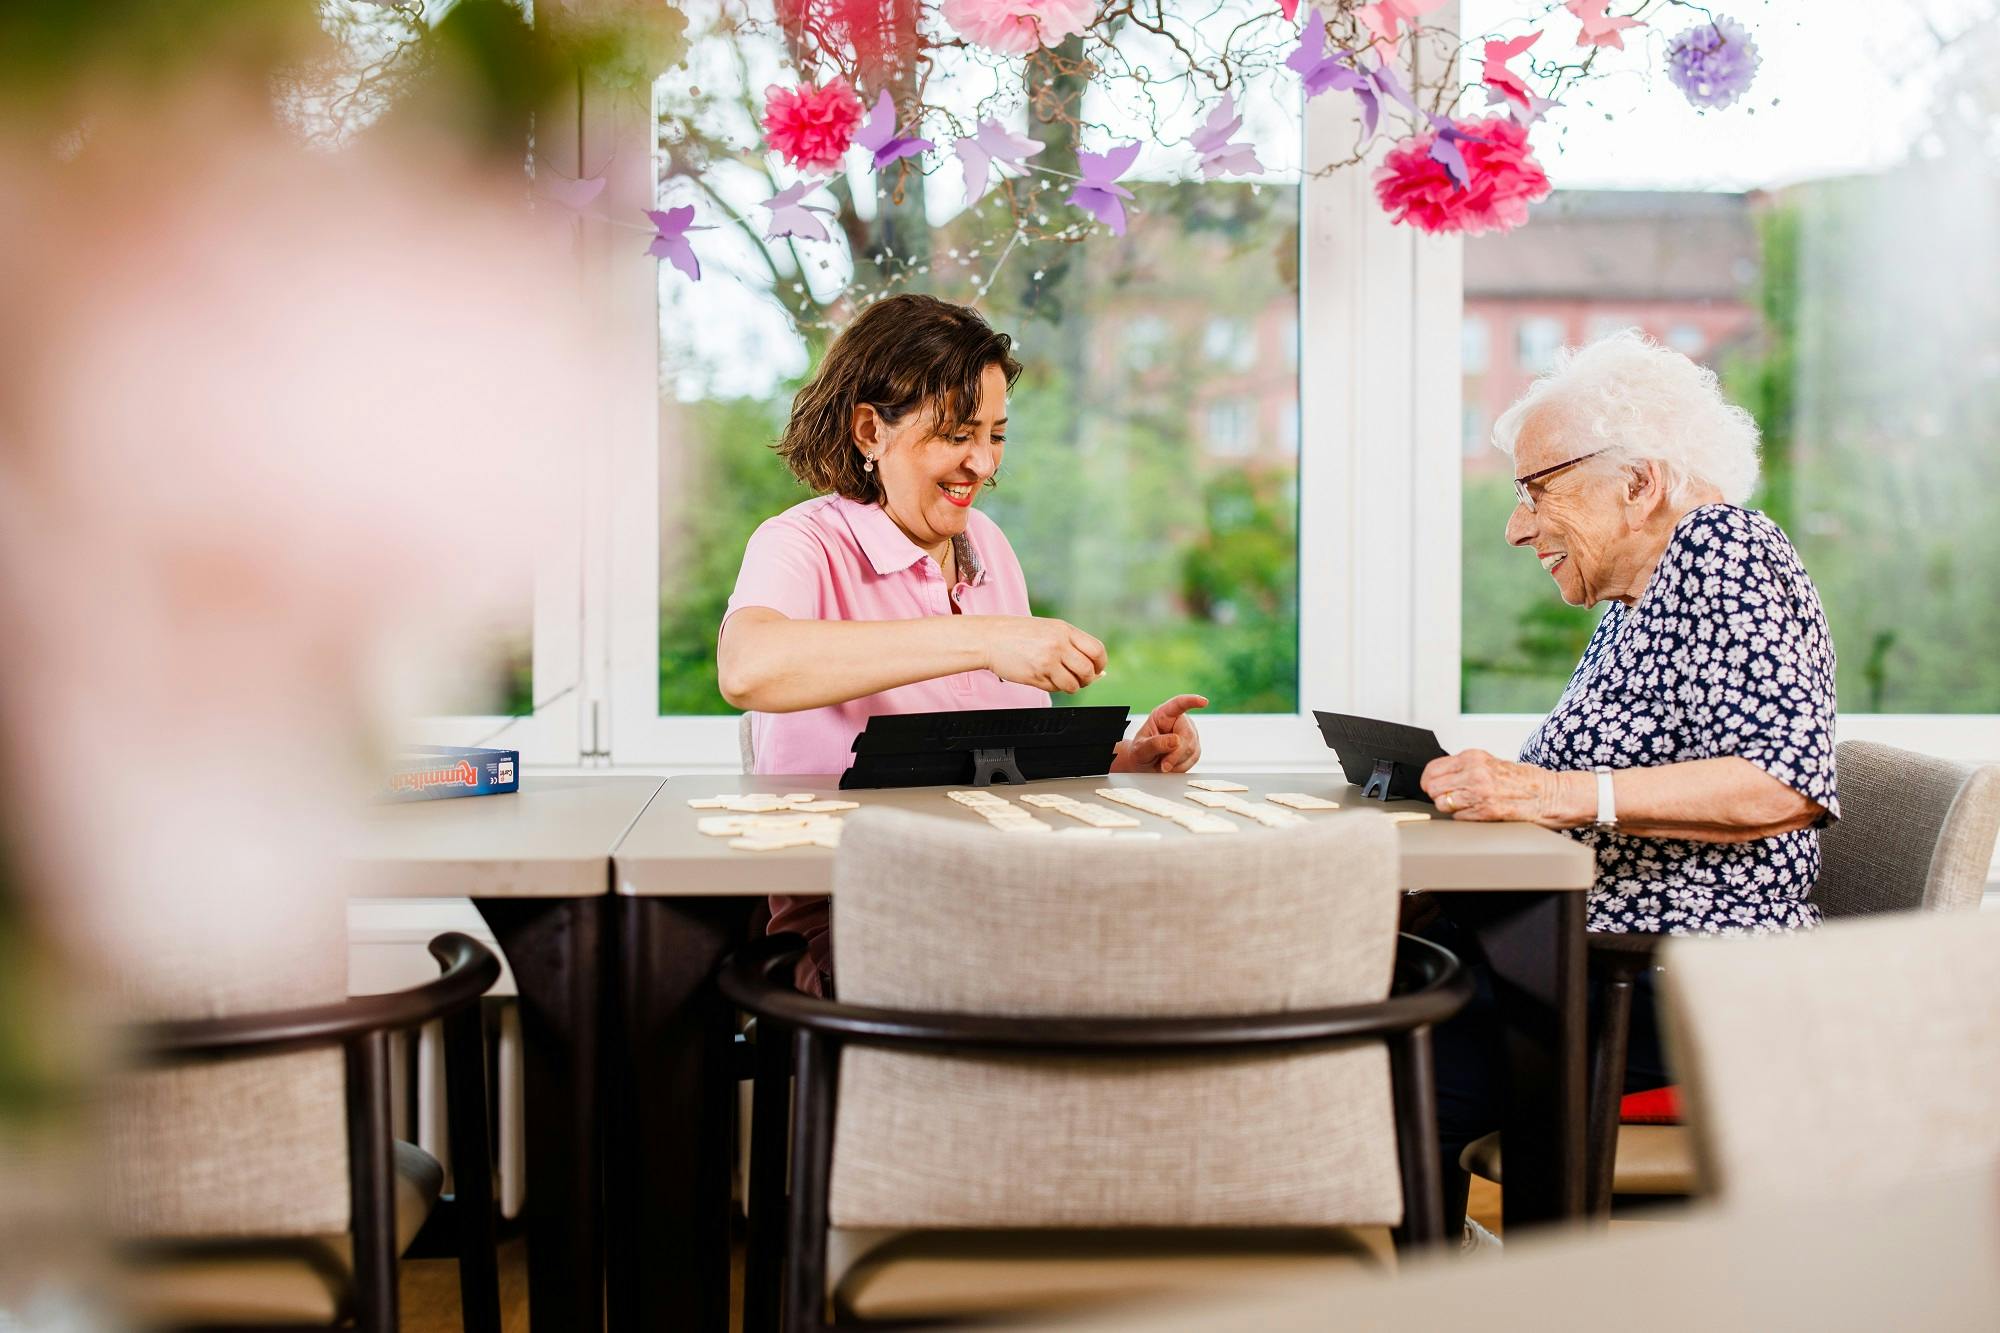 Jüngere Frau und ältere Frau lächeln beim Betrachten eines Tablets in einem hellen Raum mit Blumendekoration.